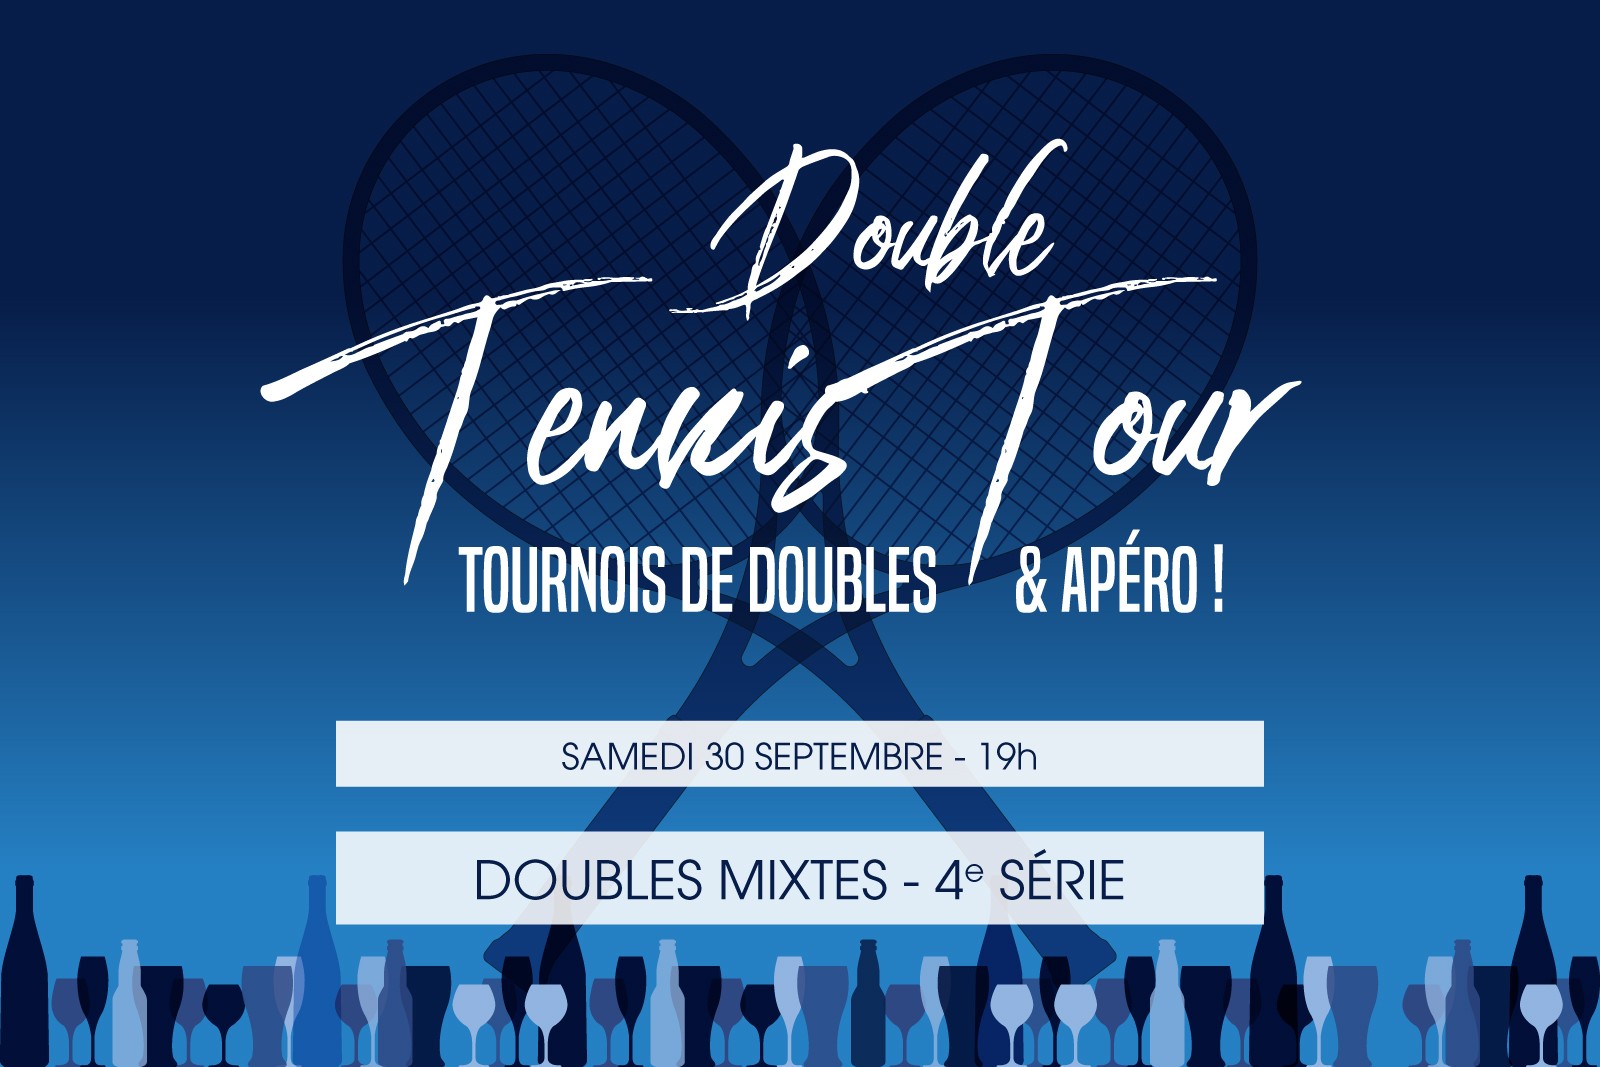 DOUBLE TENNIS TOUR - Doubles Mixtes 4e Série